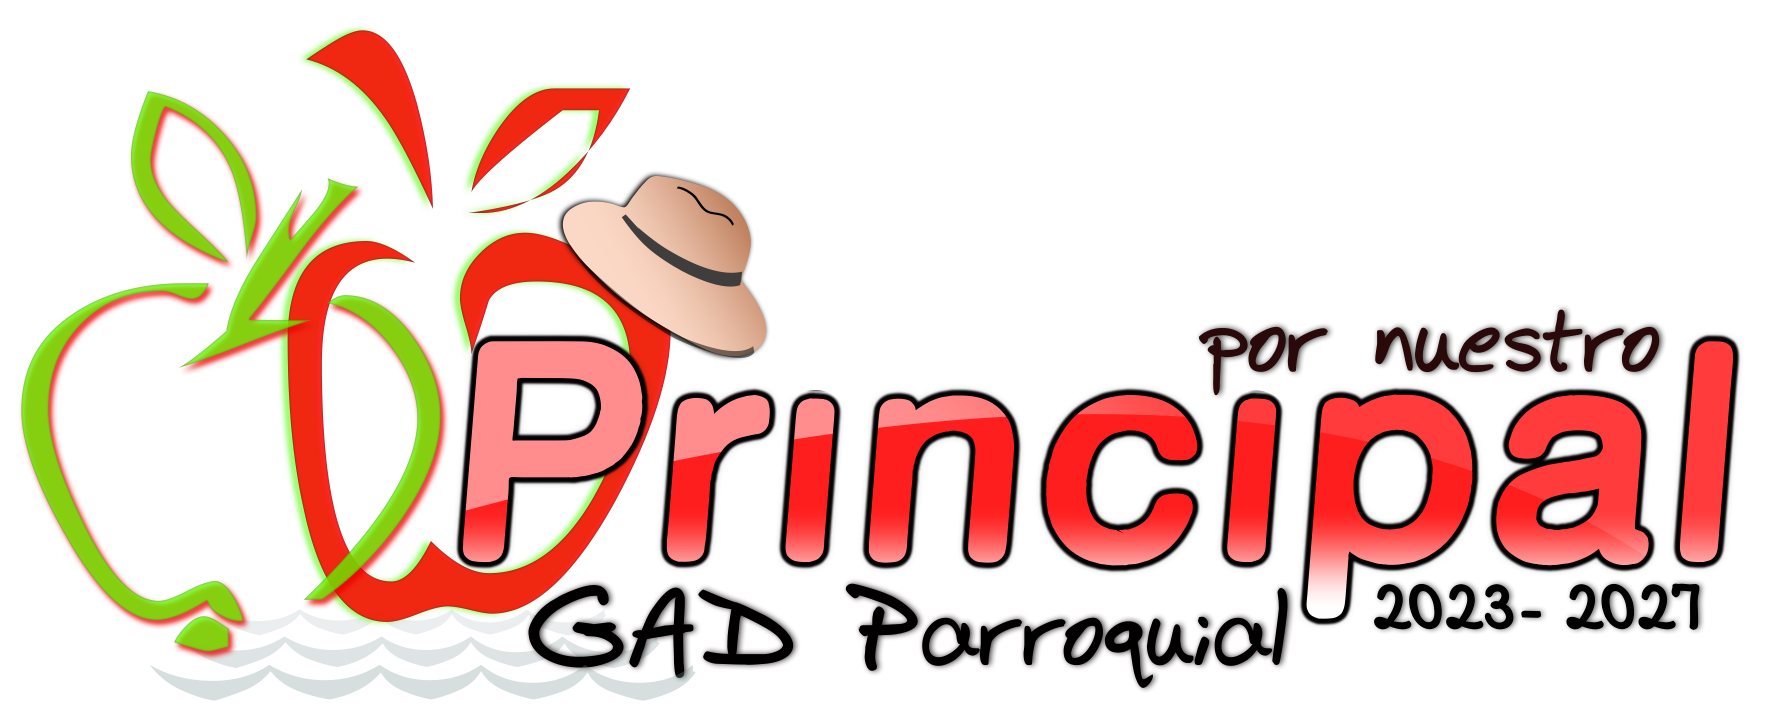 Logo for GAD Parroquial Principal